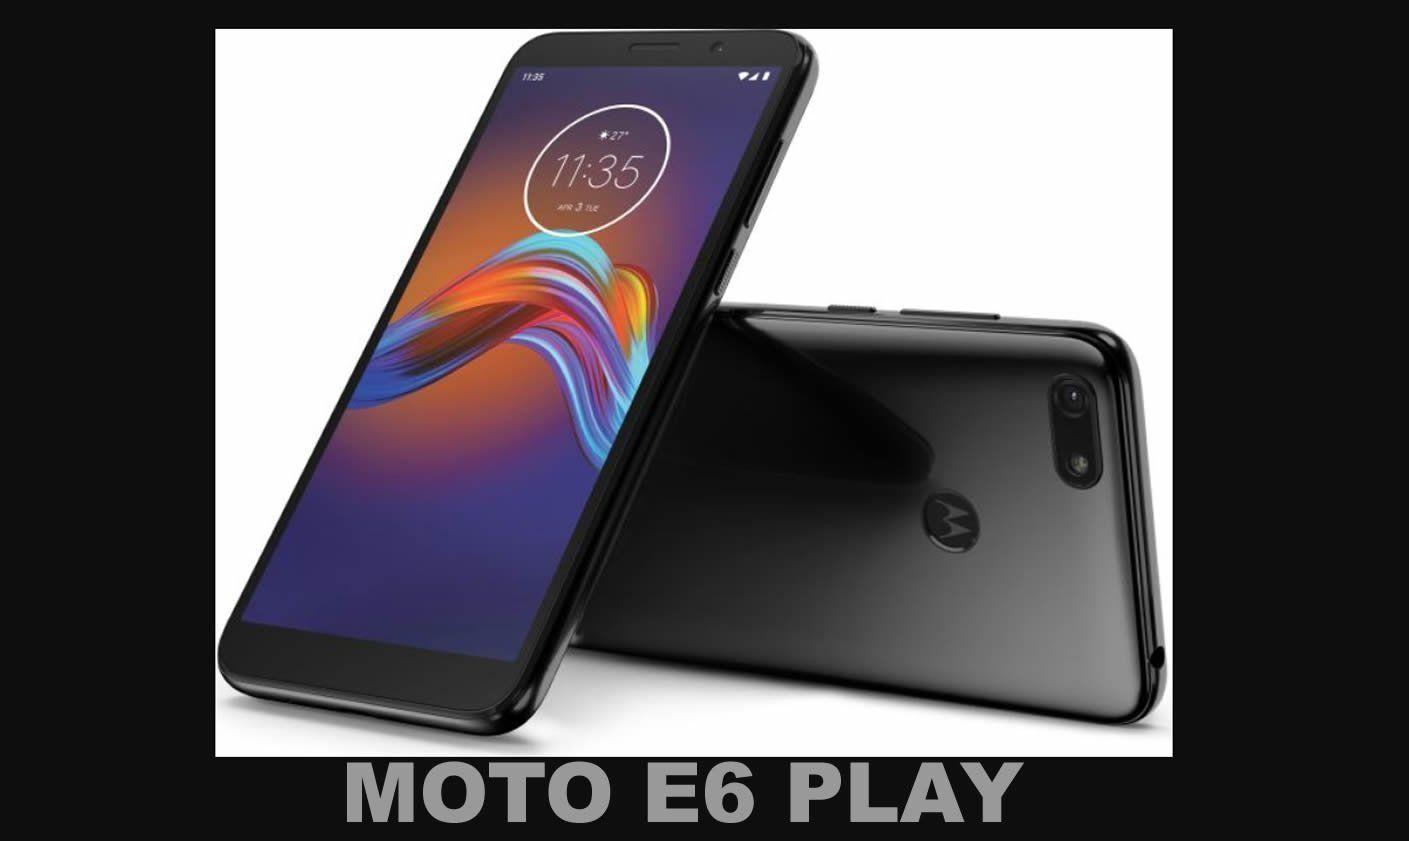 El nuevo celular Motorola Moto E6 Play esta disponible en Argentina y acá te contamos todo lo que trae